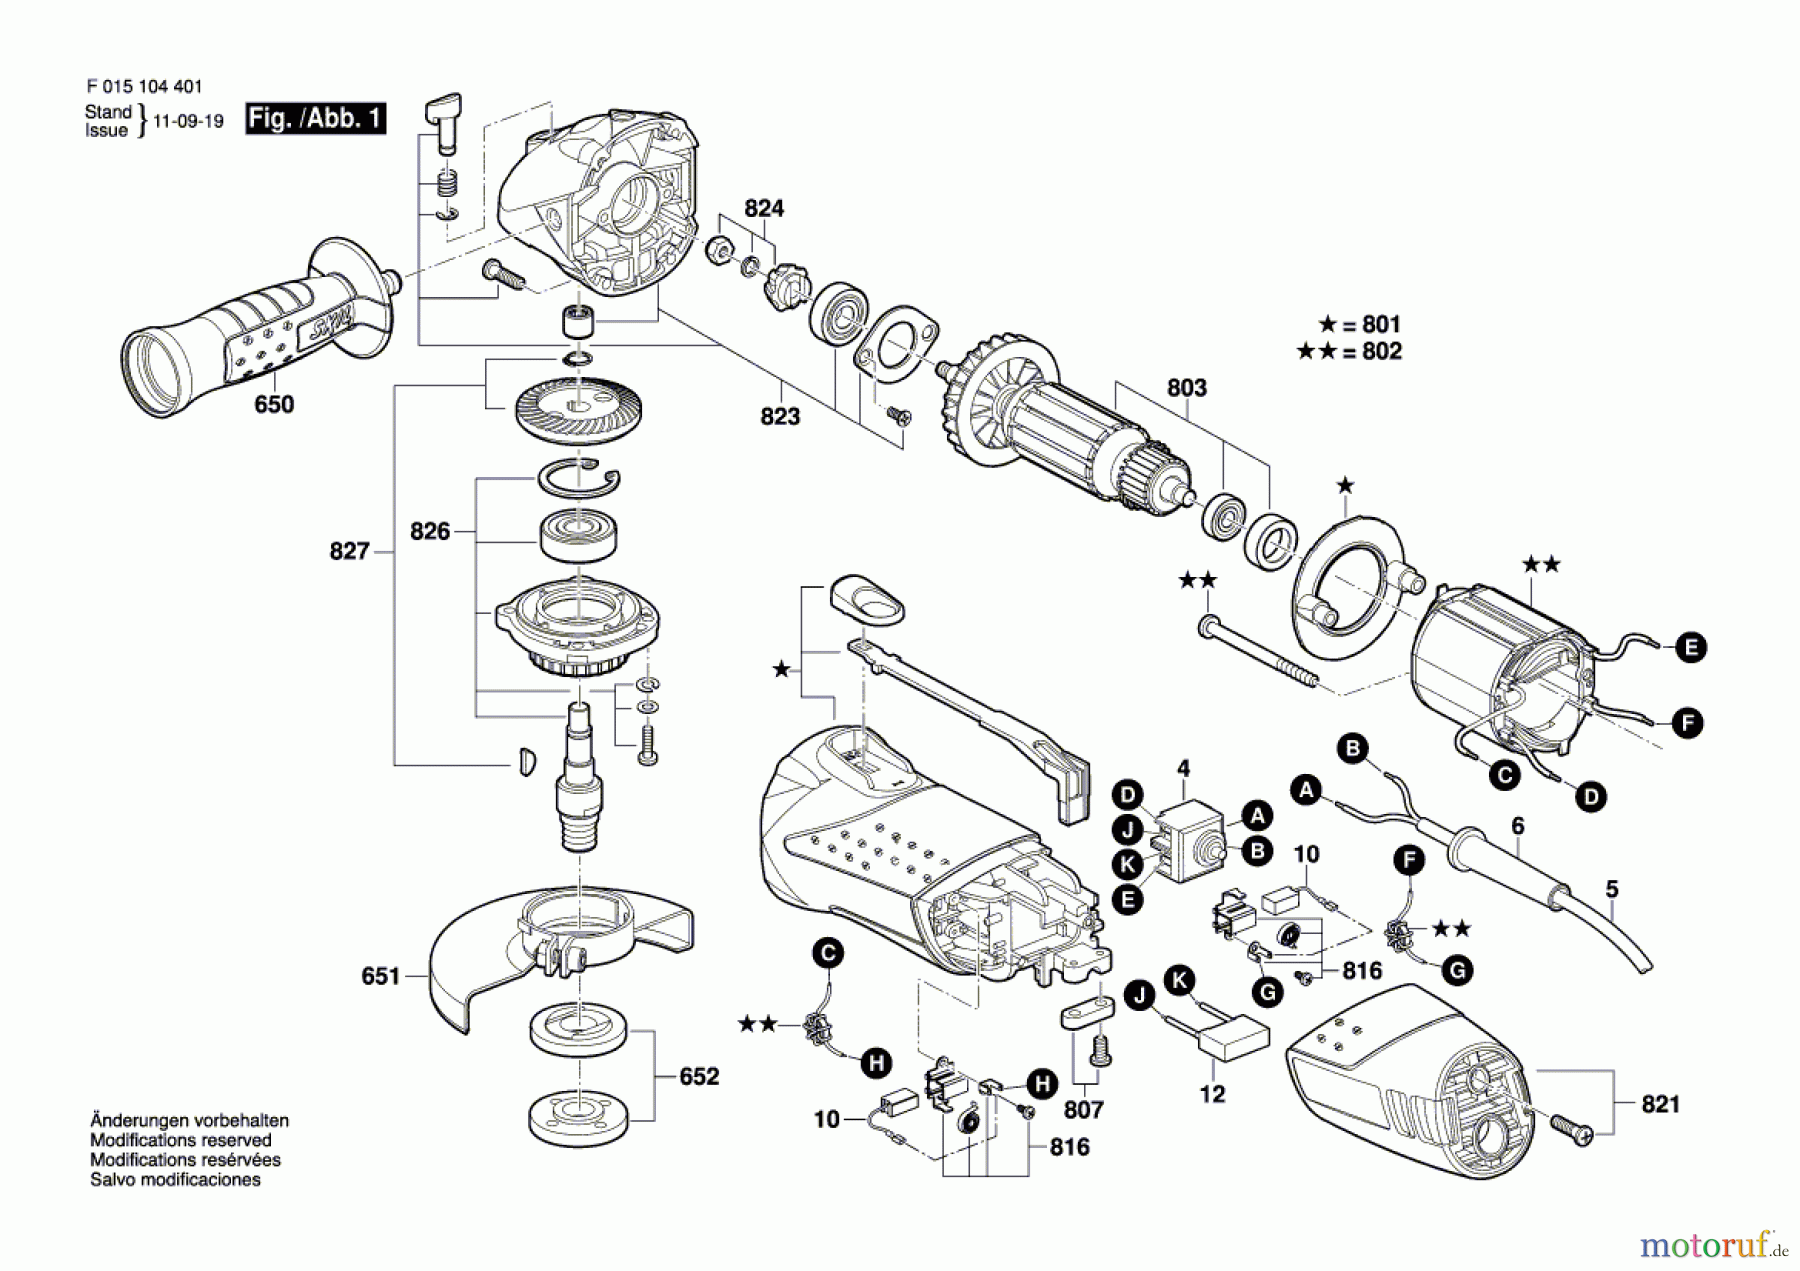  Bosch Werkzeug Winkelschleifer 1044 Seite 1